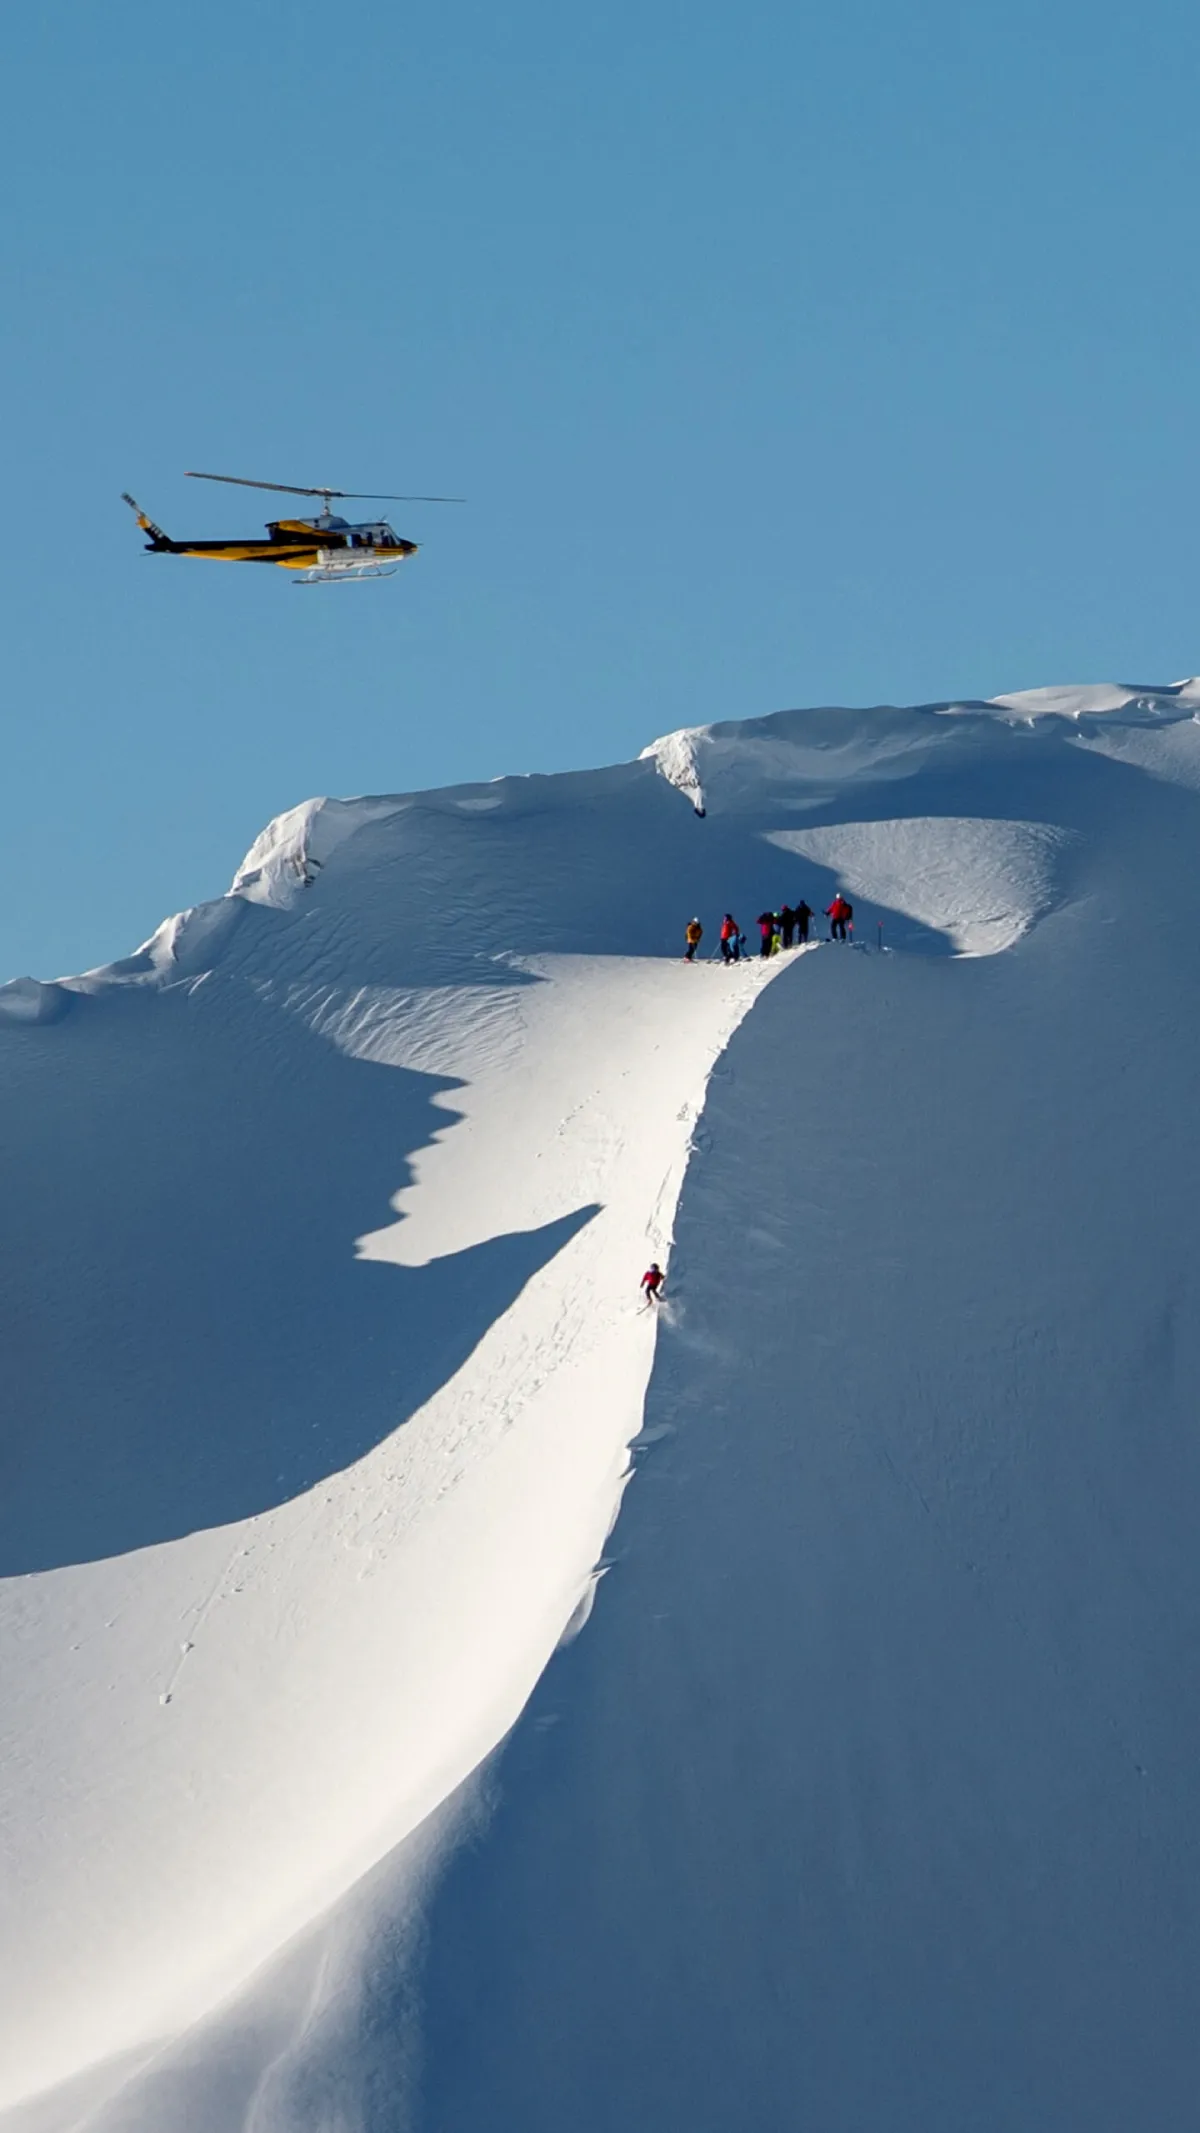 People heli-skiing